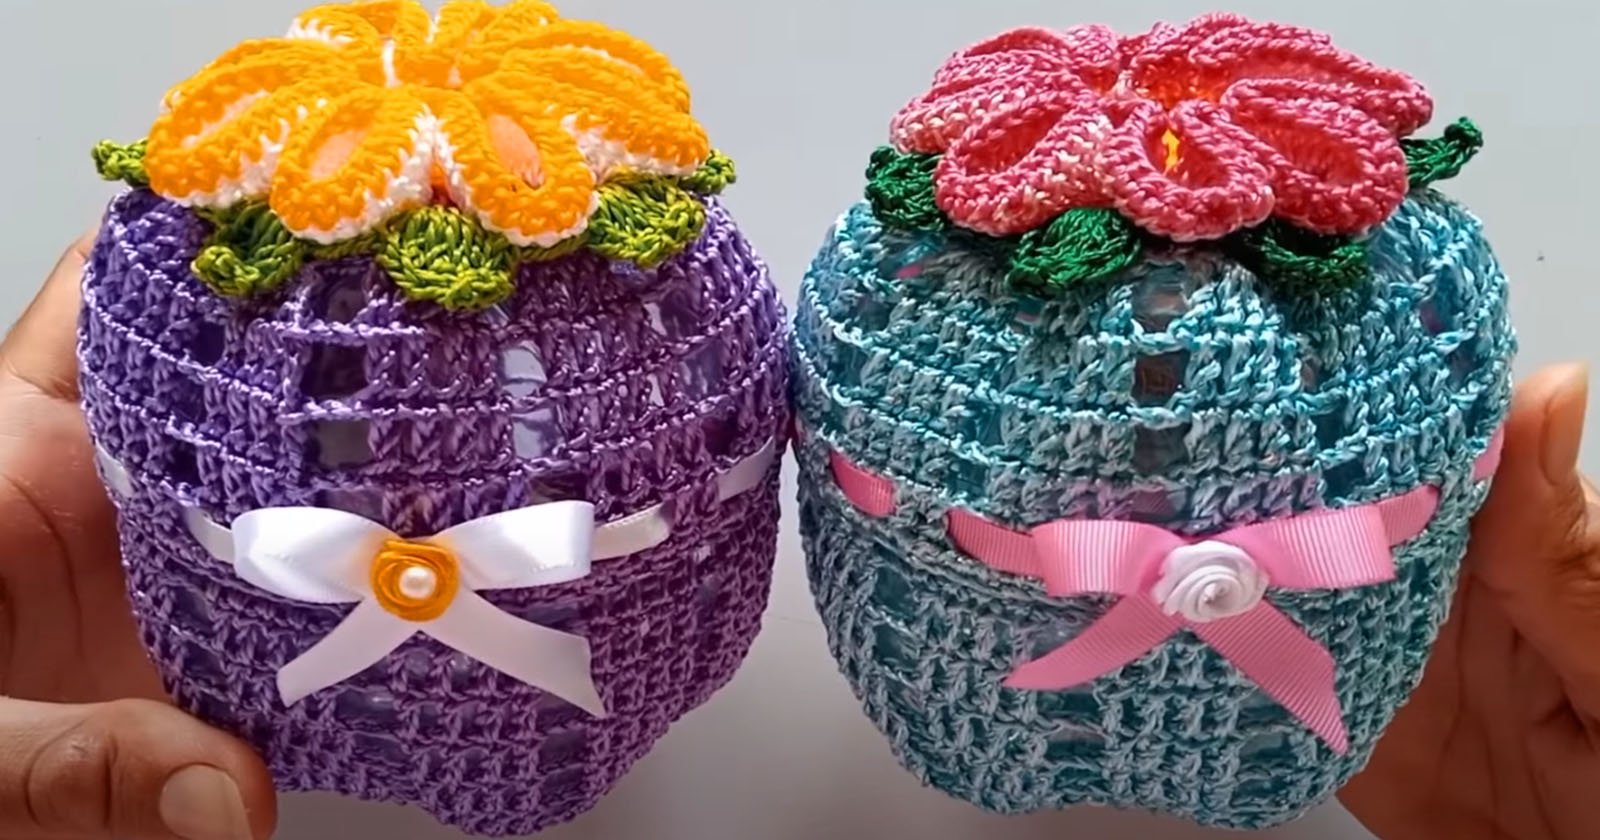 Sugestão de presente dia das mães: porta jóias de crochê reciclado com garrafa pet